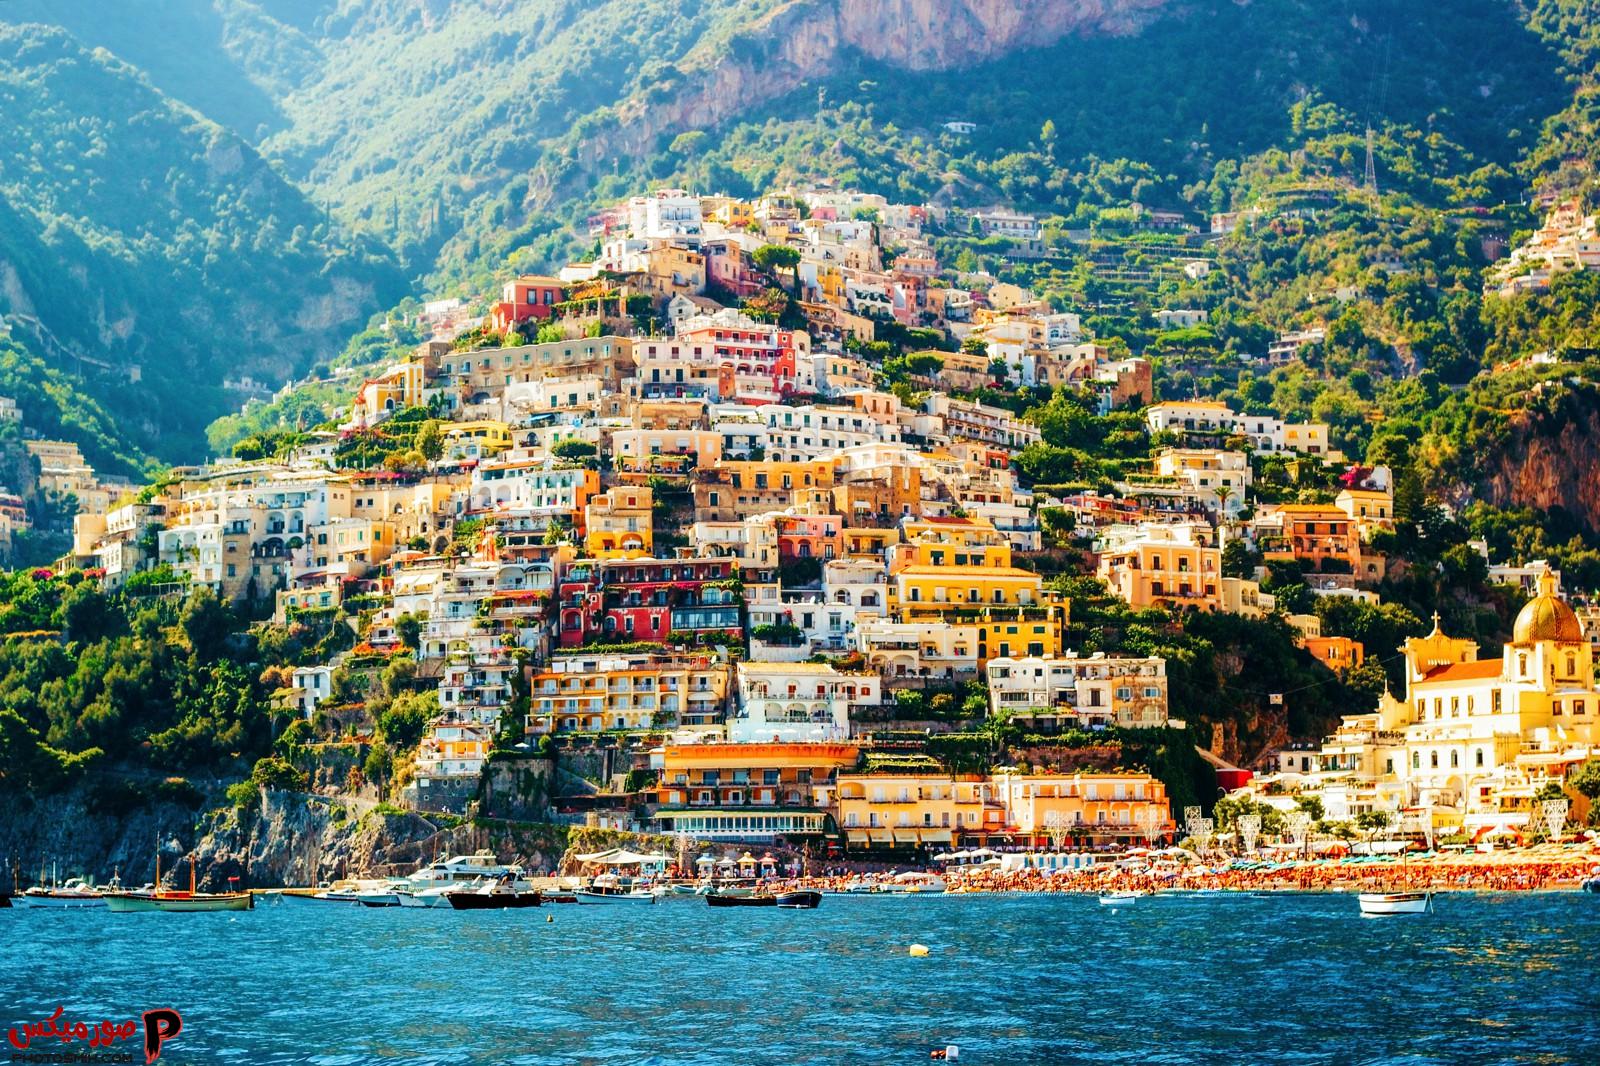 صور مدن إيطالية ساحرة ومعلومات عامة عن دولة إيطاليا 2